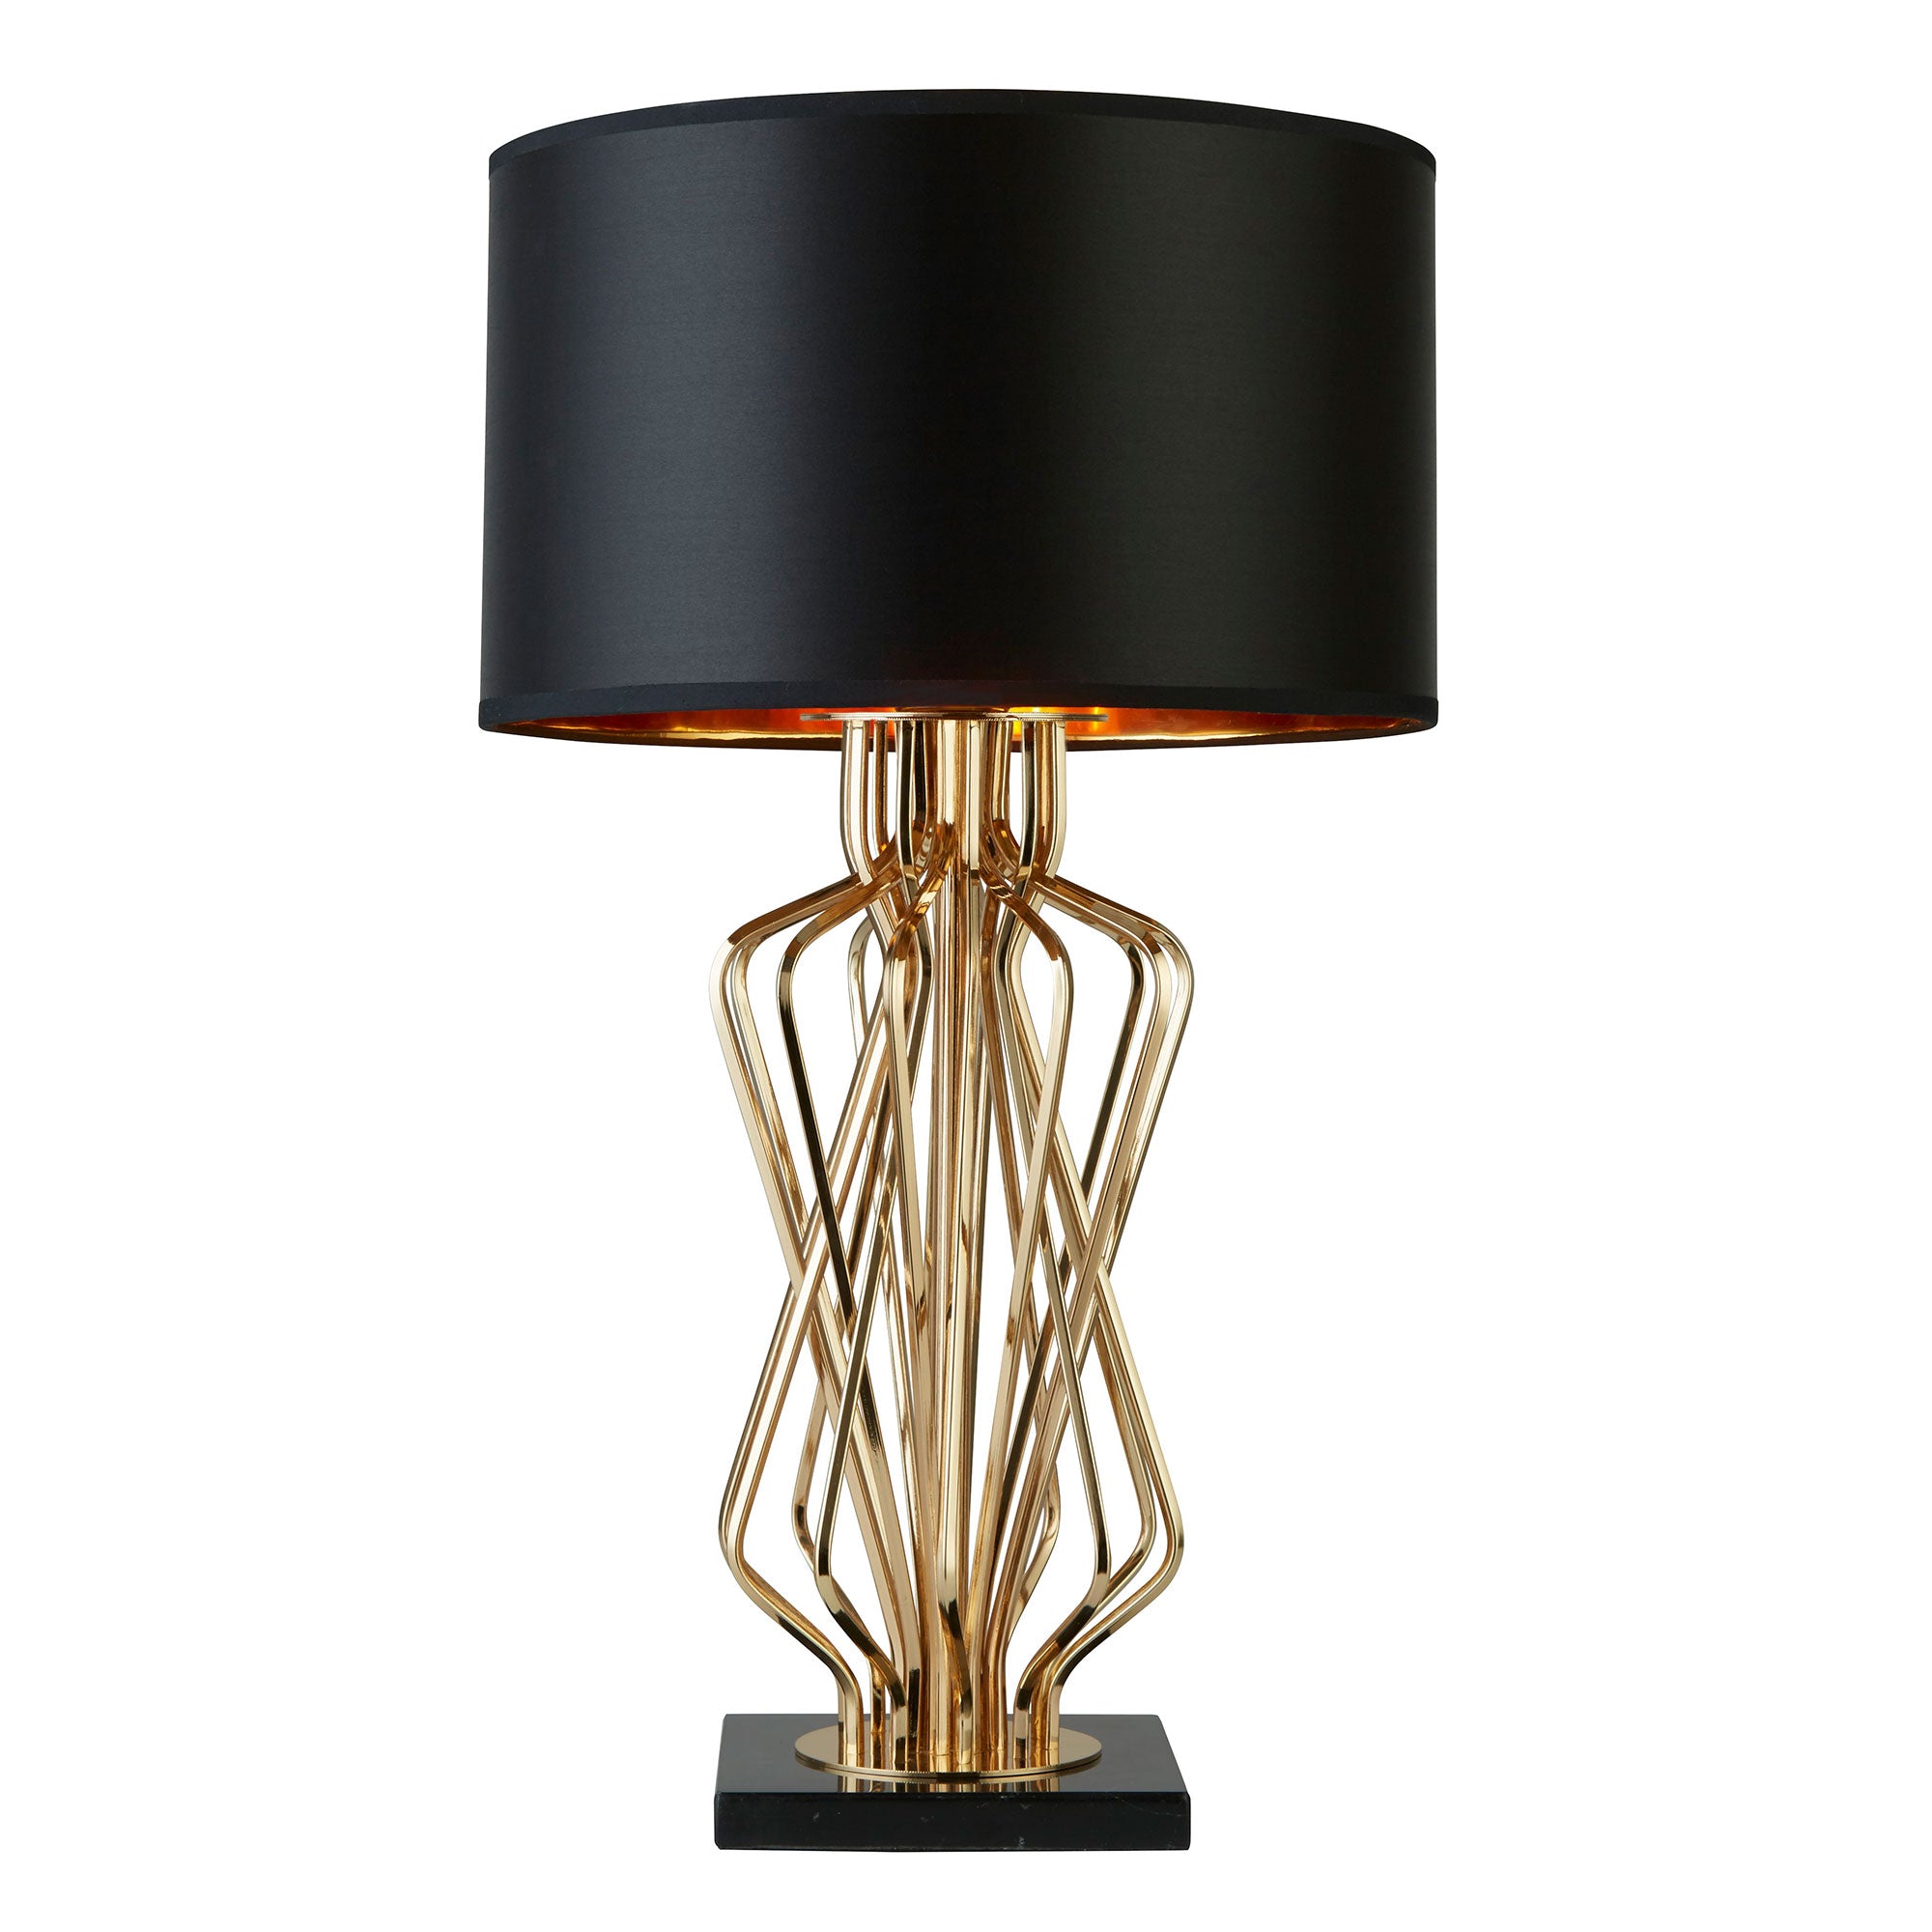 Brim - Black Table Lamp